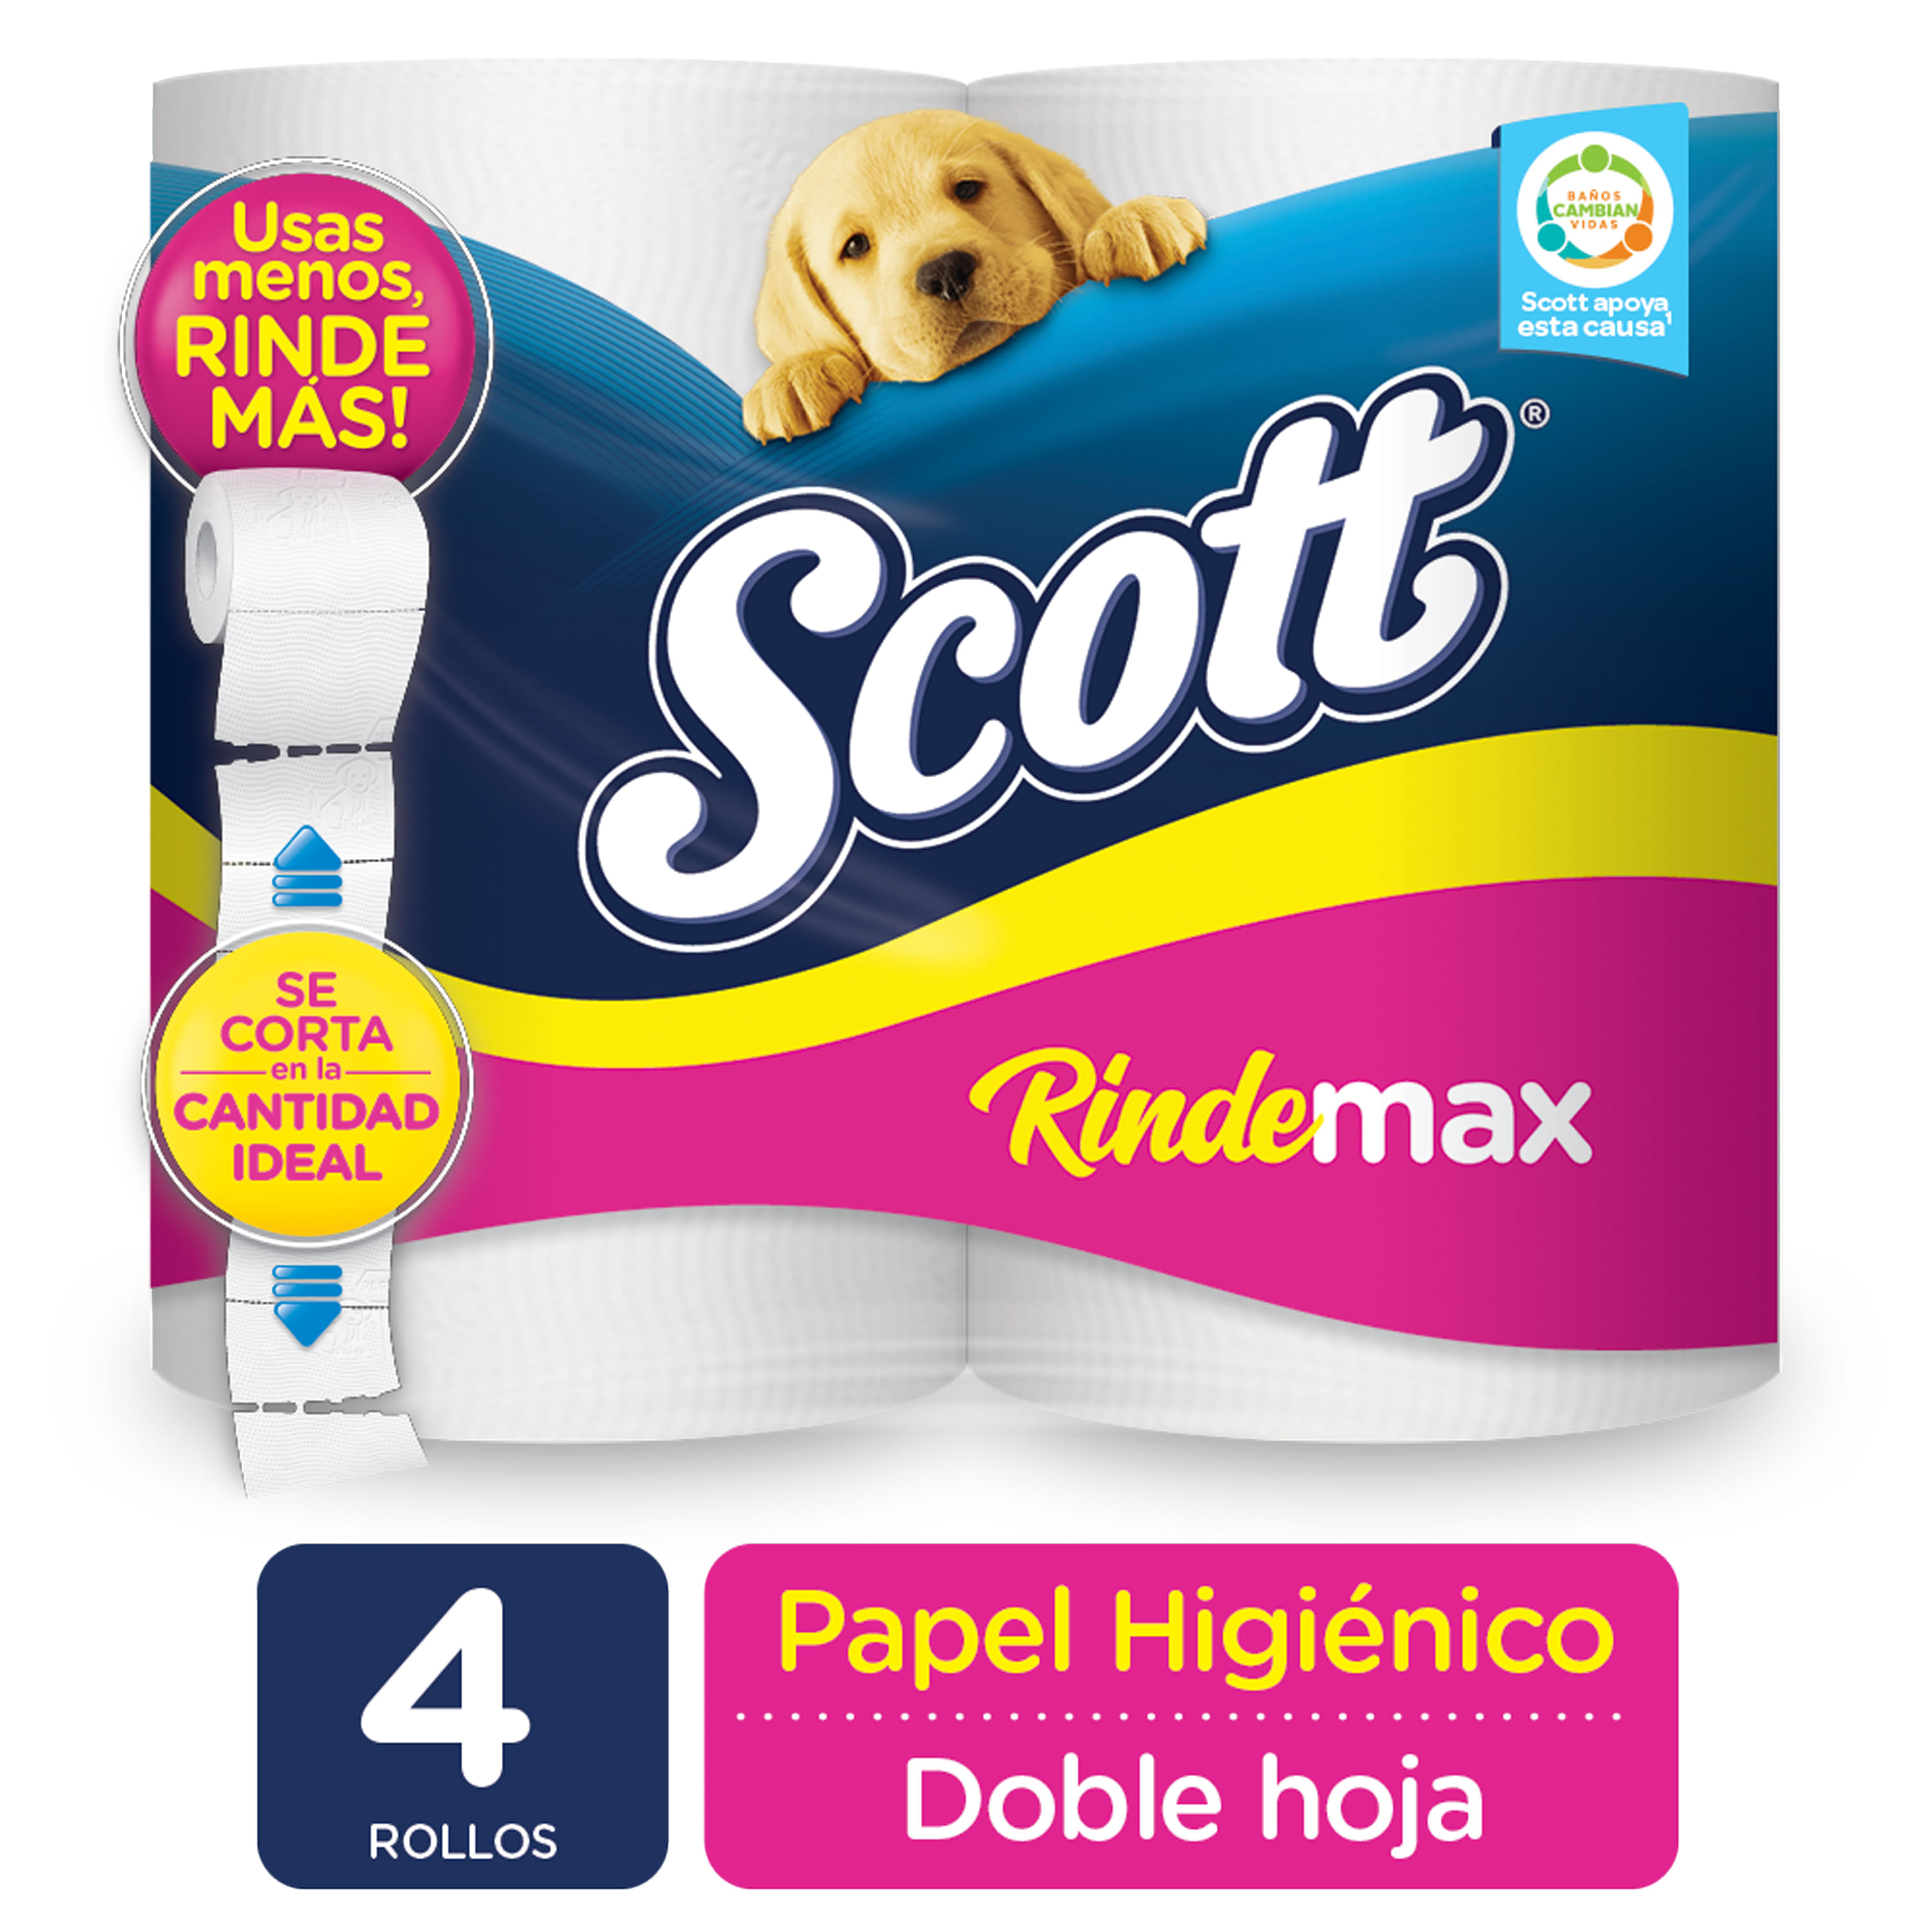 Llévate el papel higiénico de Scottex al mejor precio - Centre Comercial  Montigalà